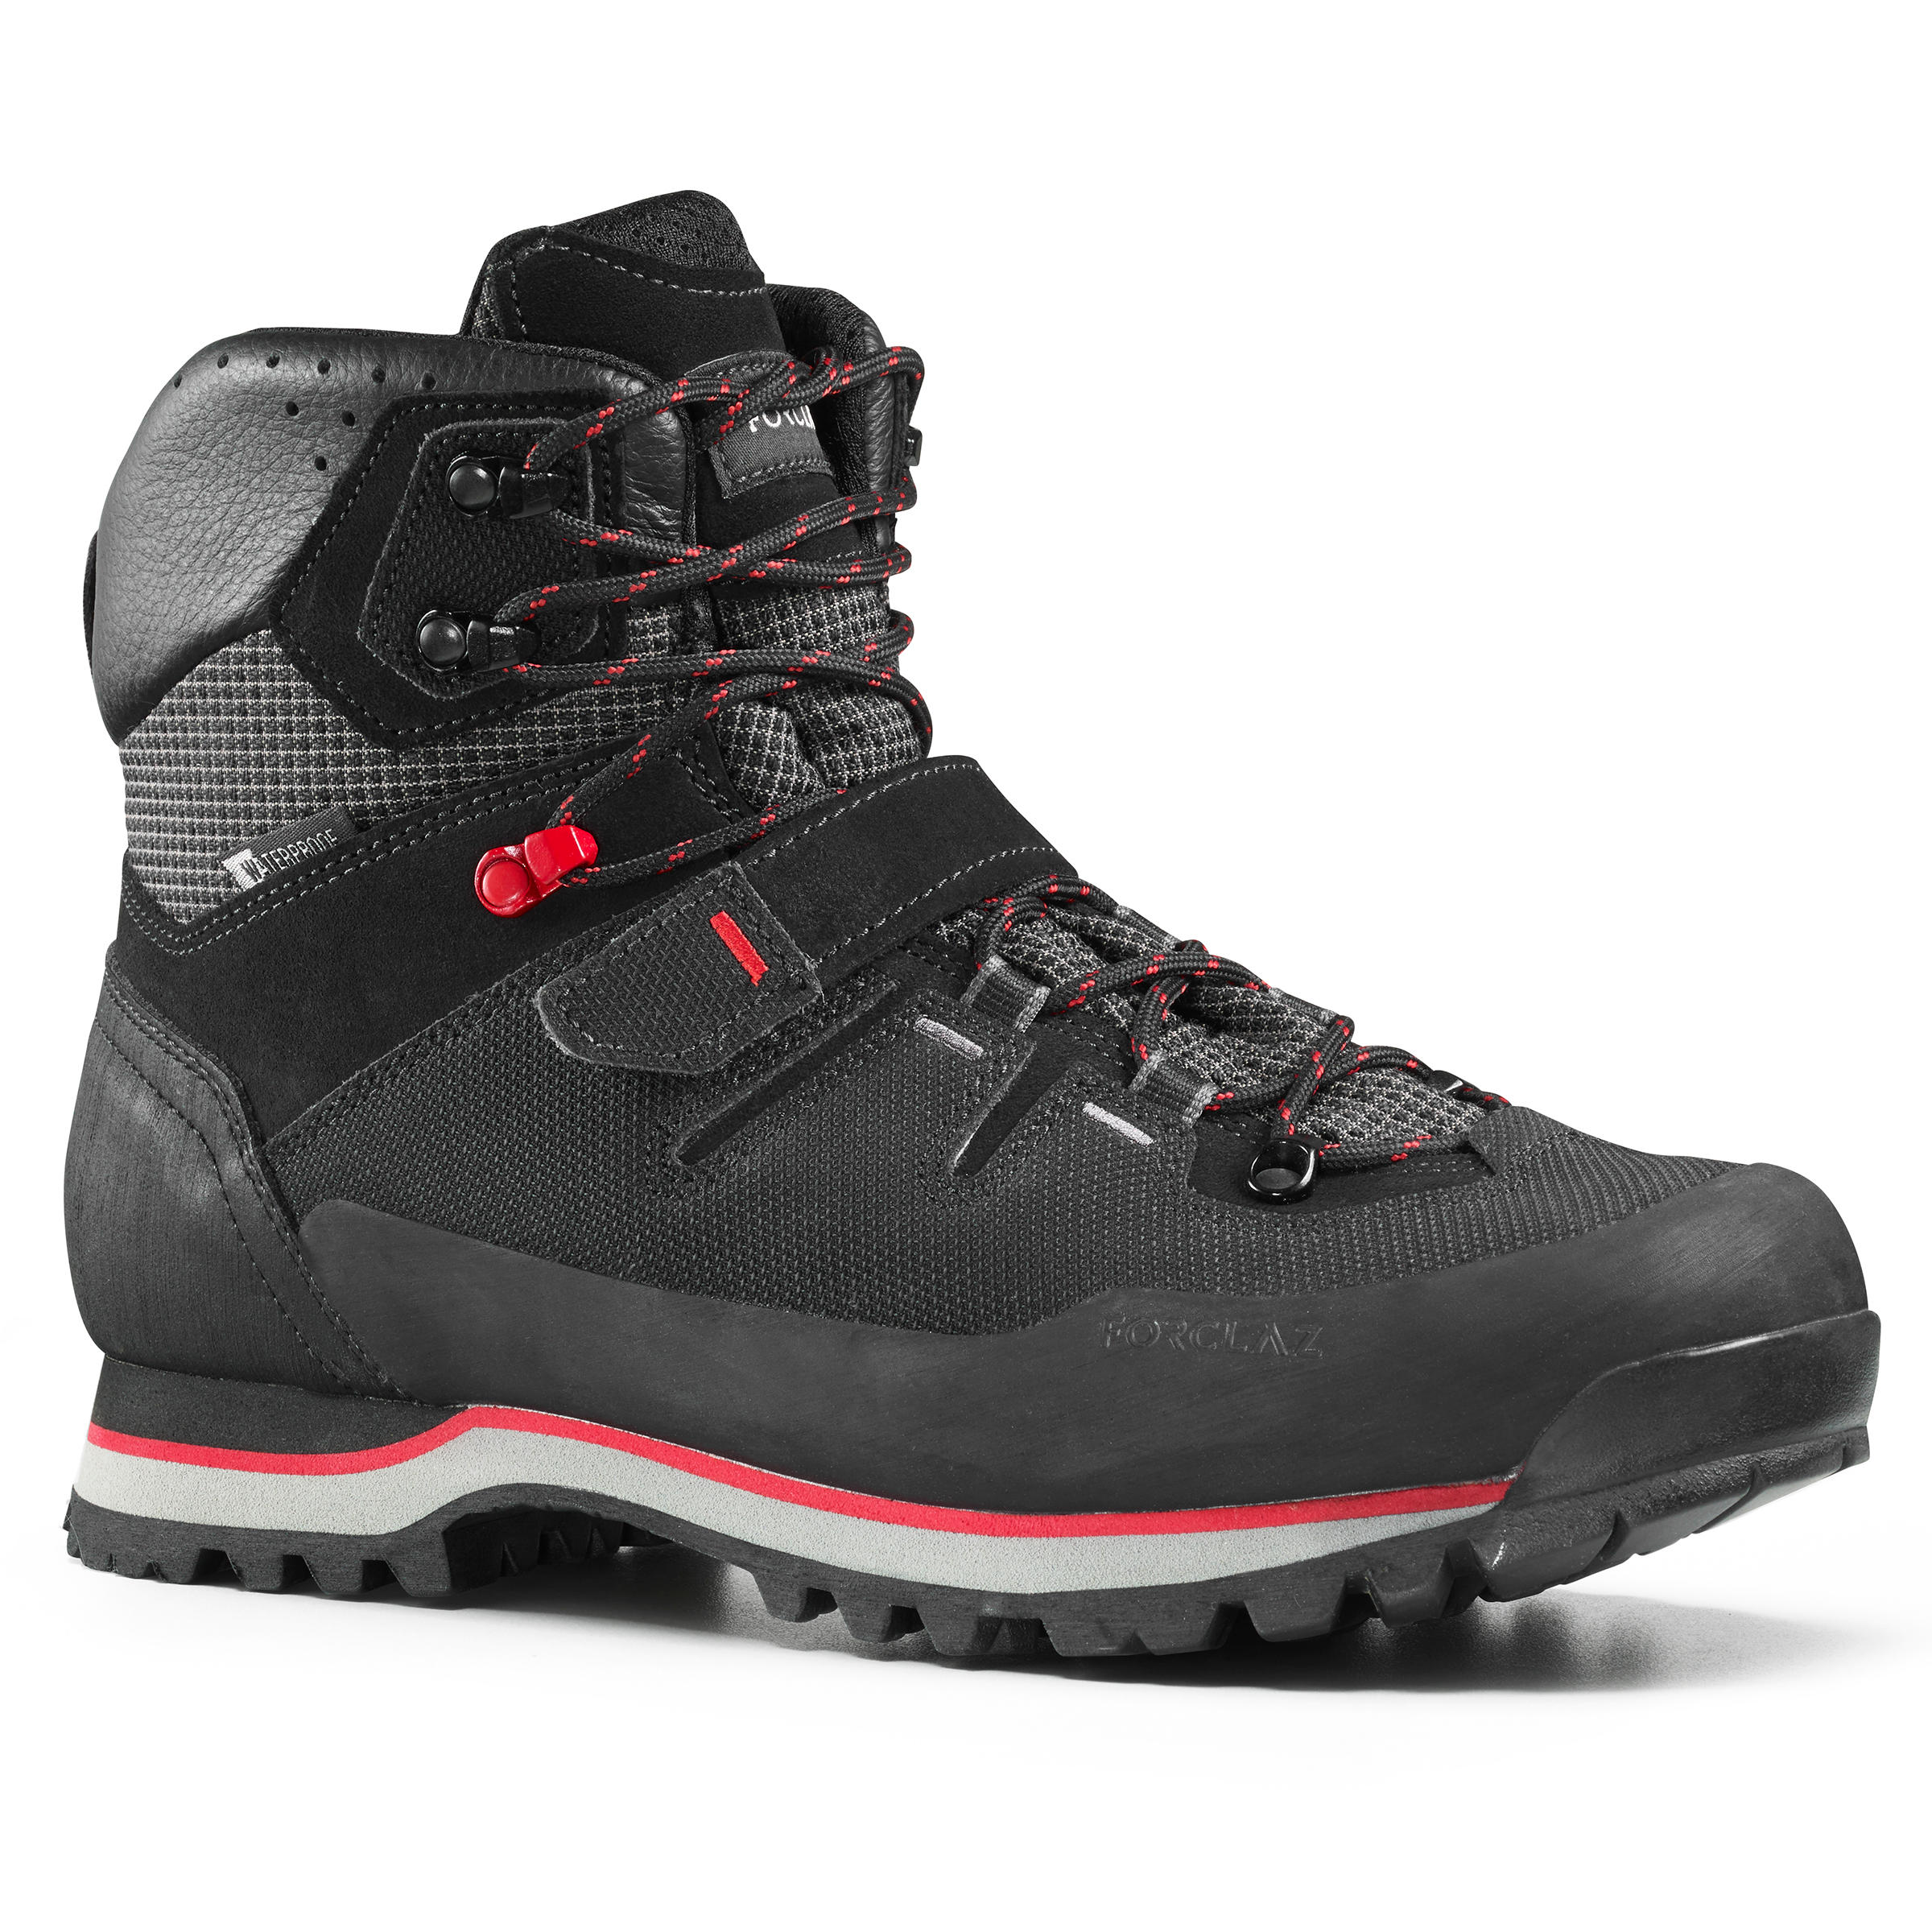 FORCLAZ Trek700 Men's Mountain Trekking Boots